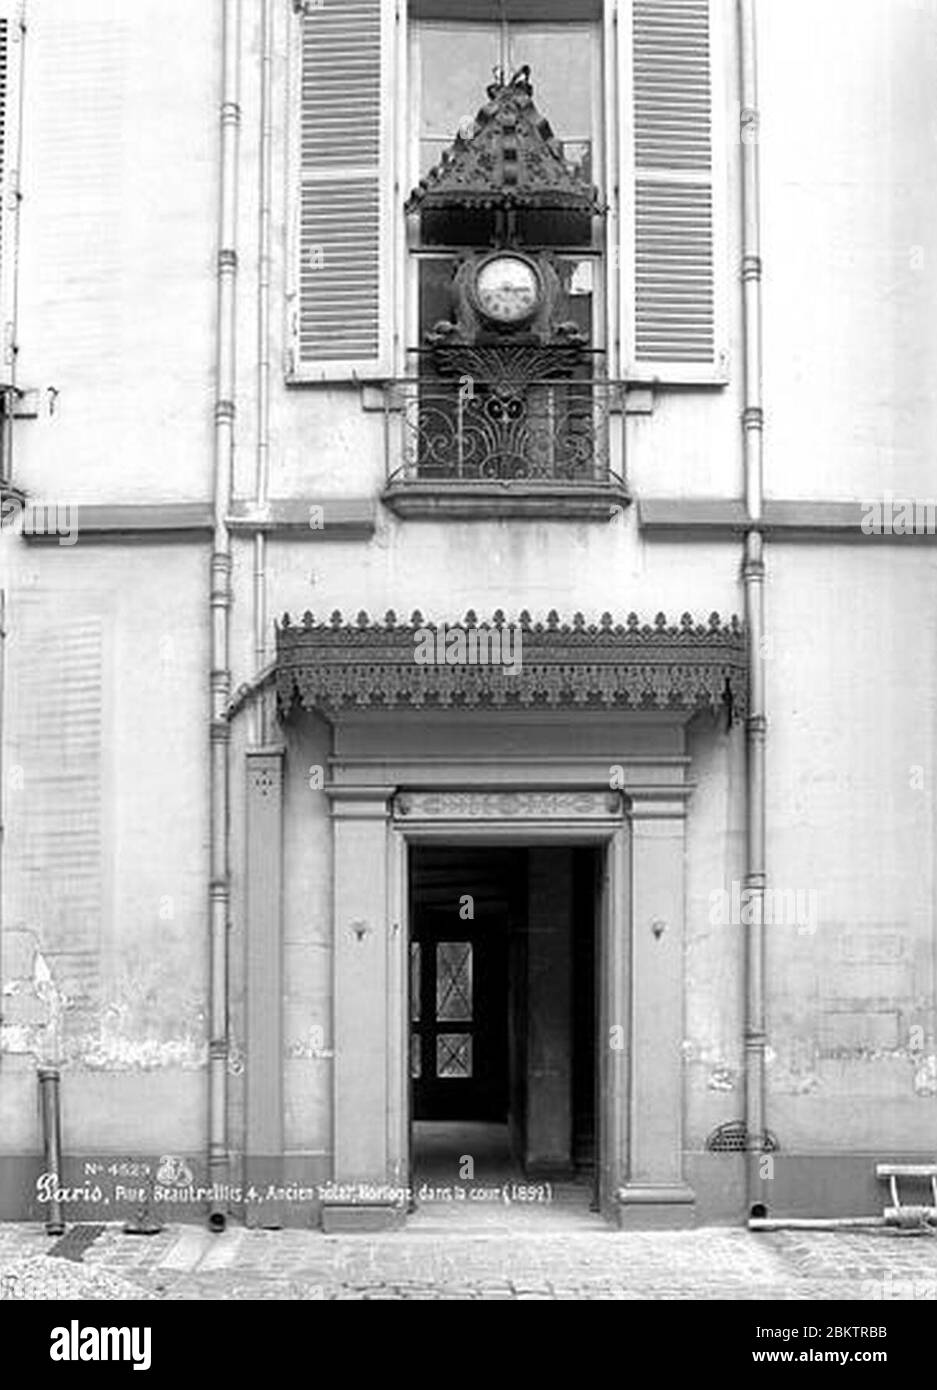 Hôtel Jean-Louis Raoul - Cour intérieure Horloge et porte - Paris 04 -  Médiathèque de l'architecture et du patrimoine Stock Photo - Alamy